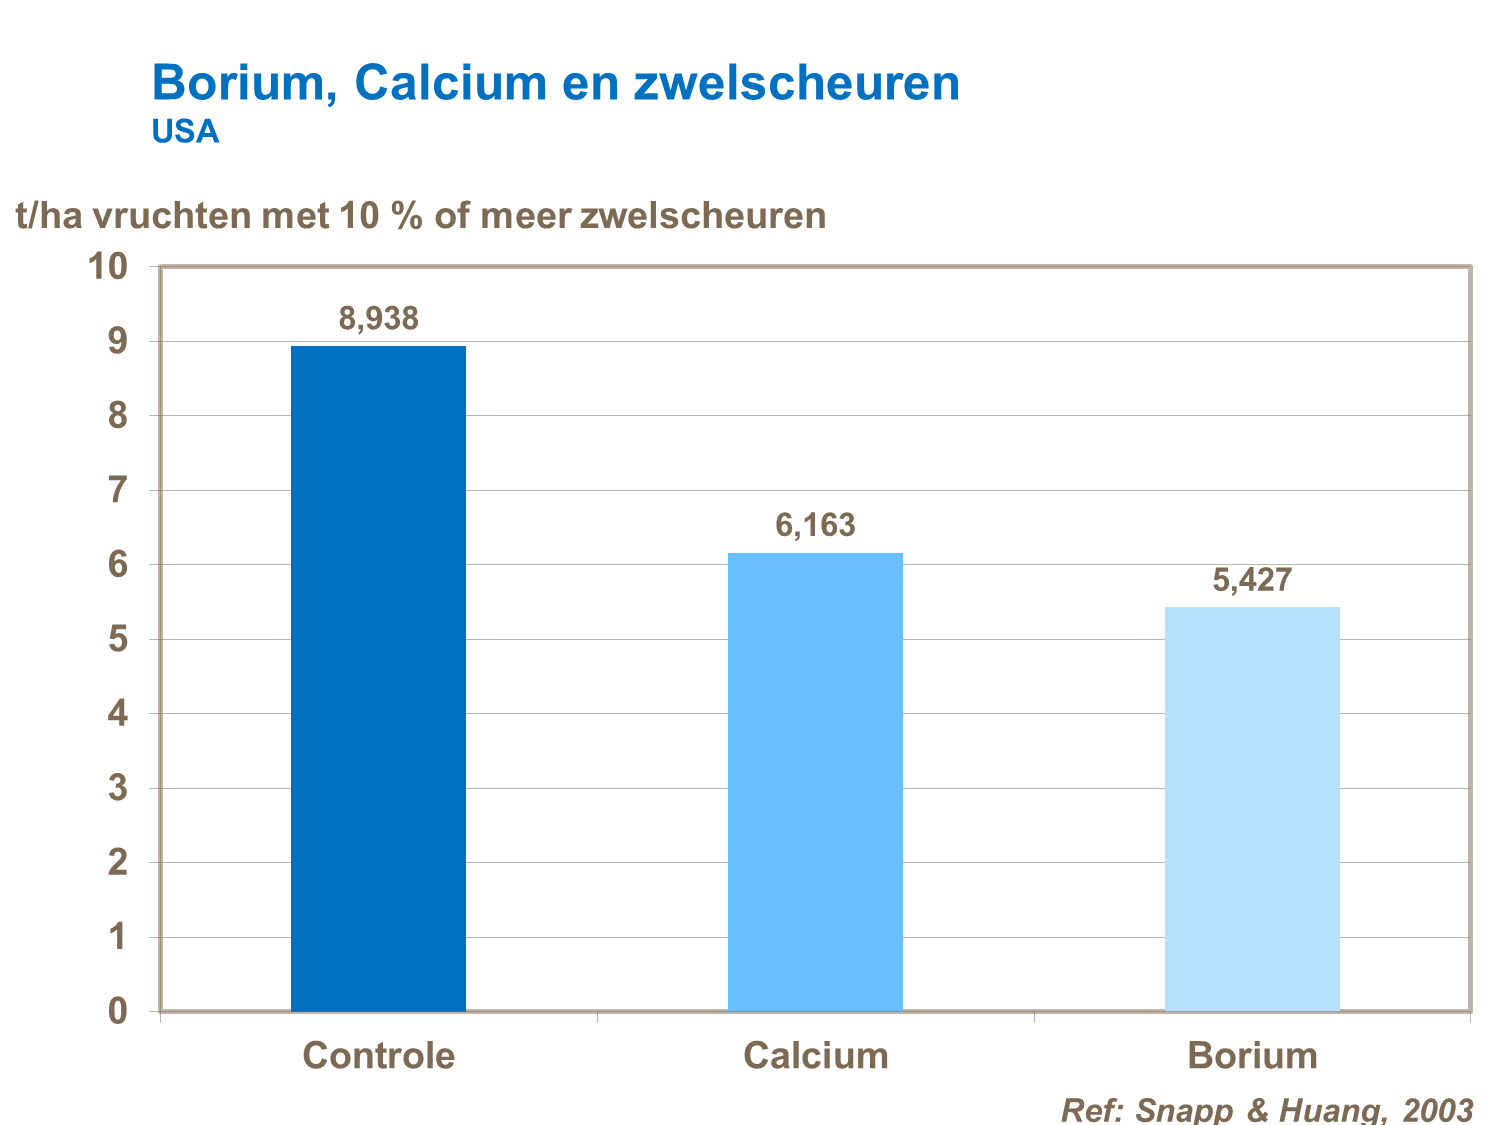 Borium, Calcium bemesting en zwelscheuren